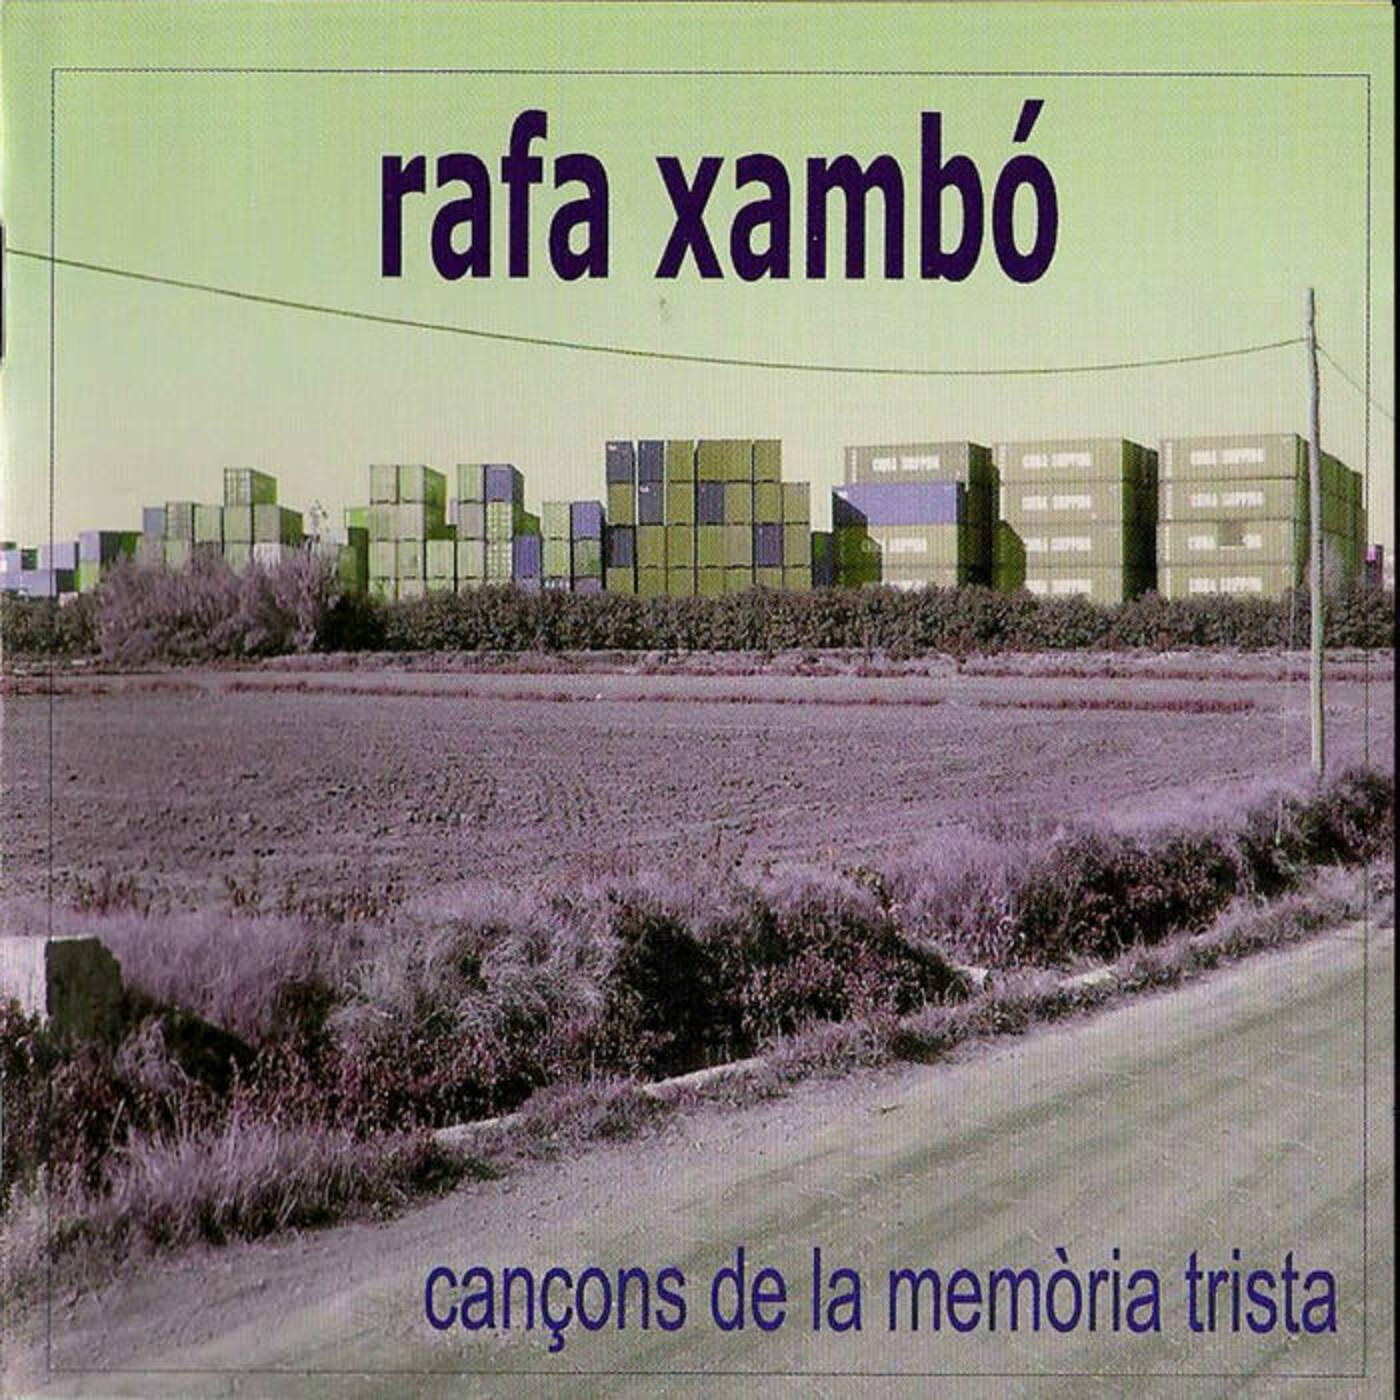 Rafa Xambó - Cançons de la memòria trista | musica en valencià